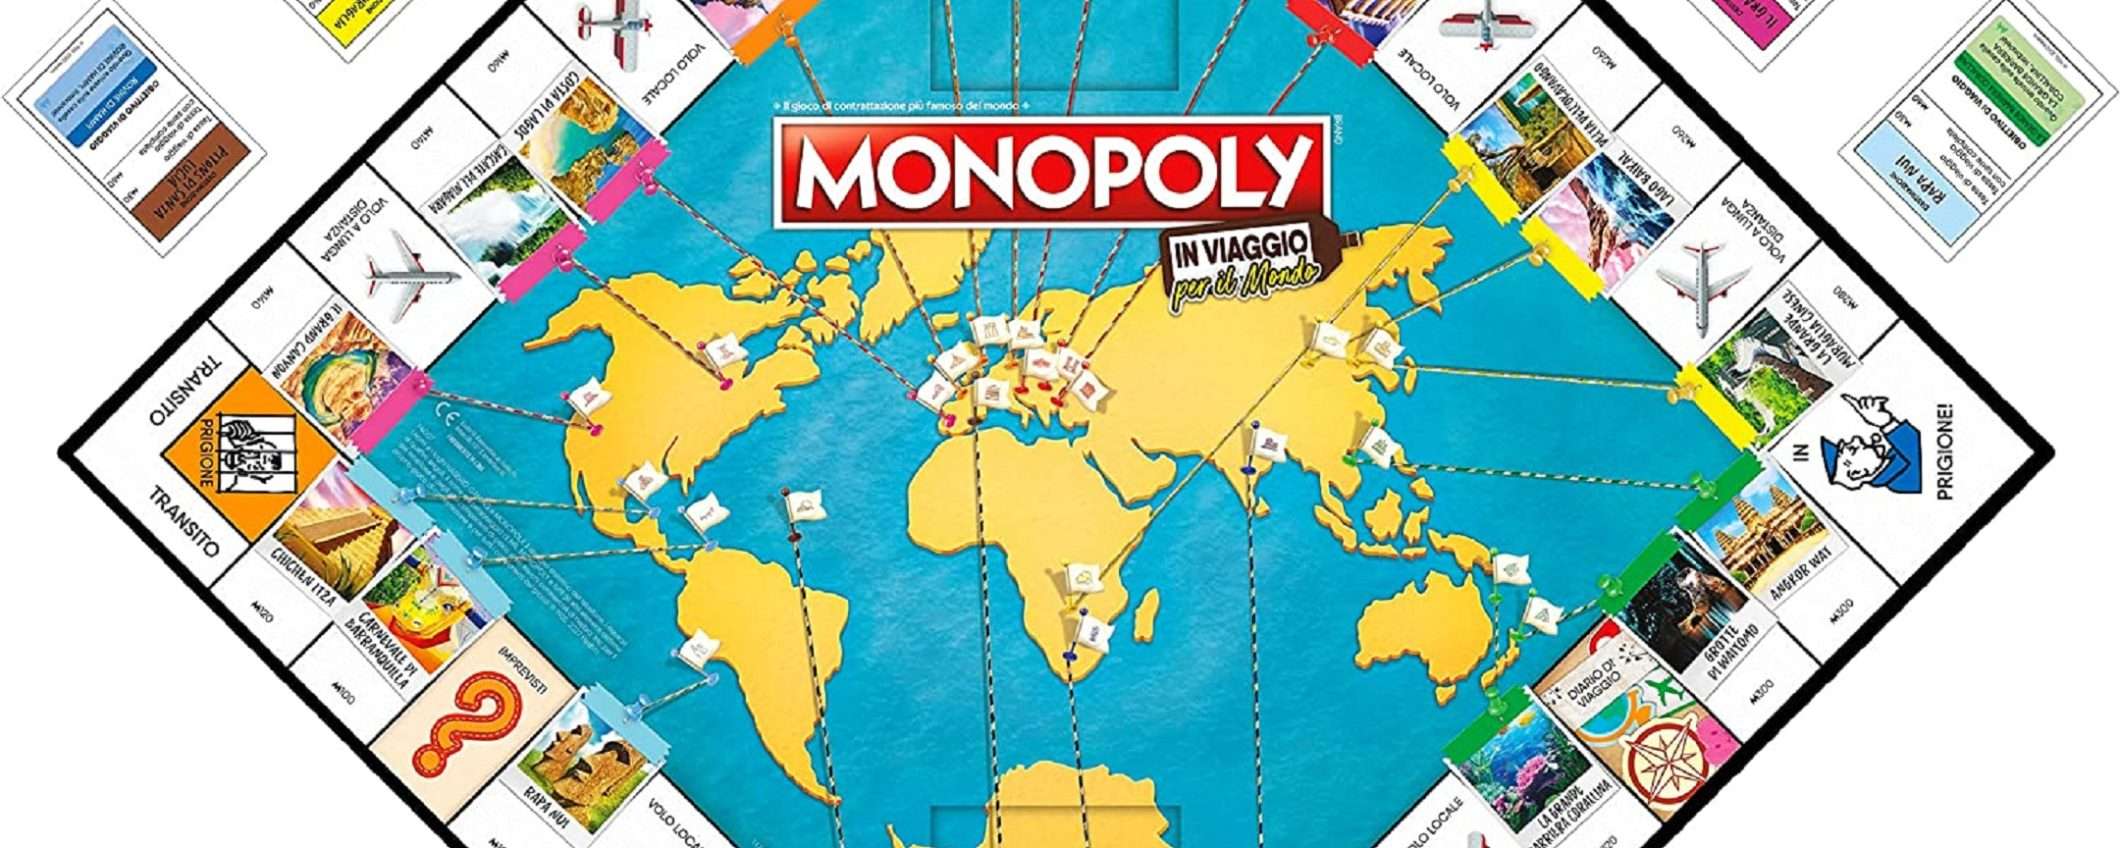 Monopoly In Viaggio per il Mondo: 16€ e il divertimento è assicurato!